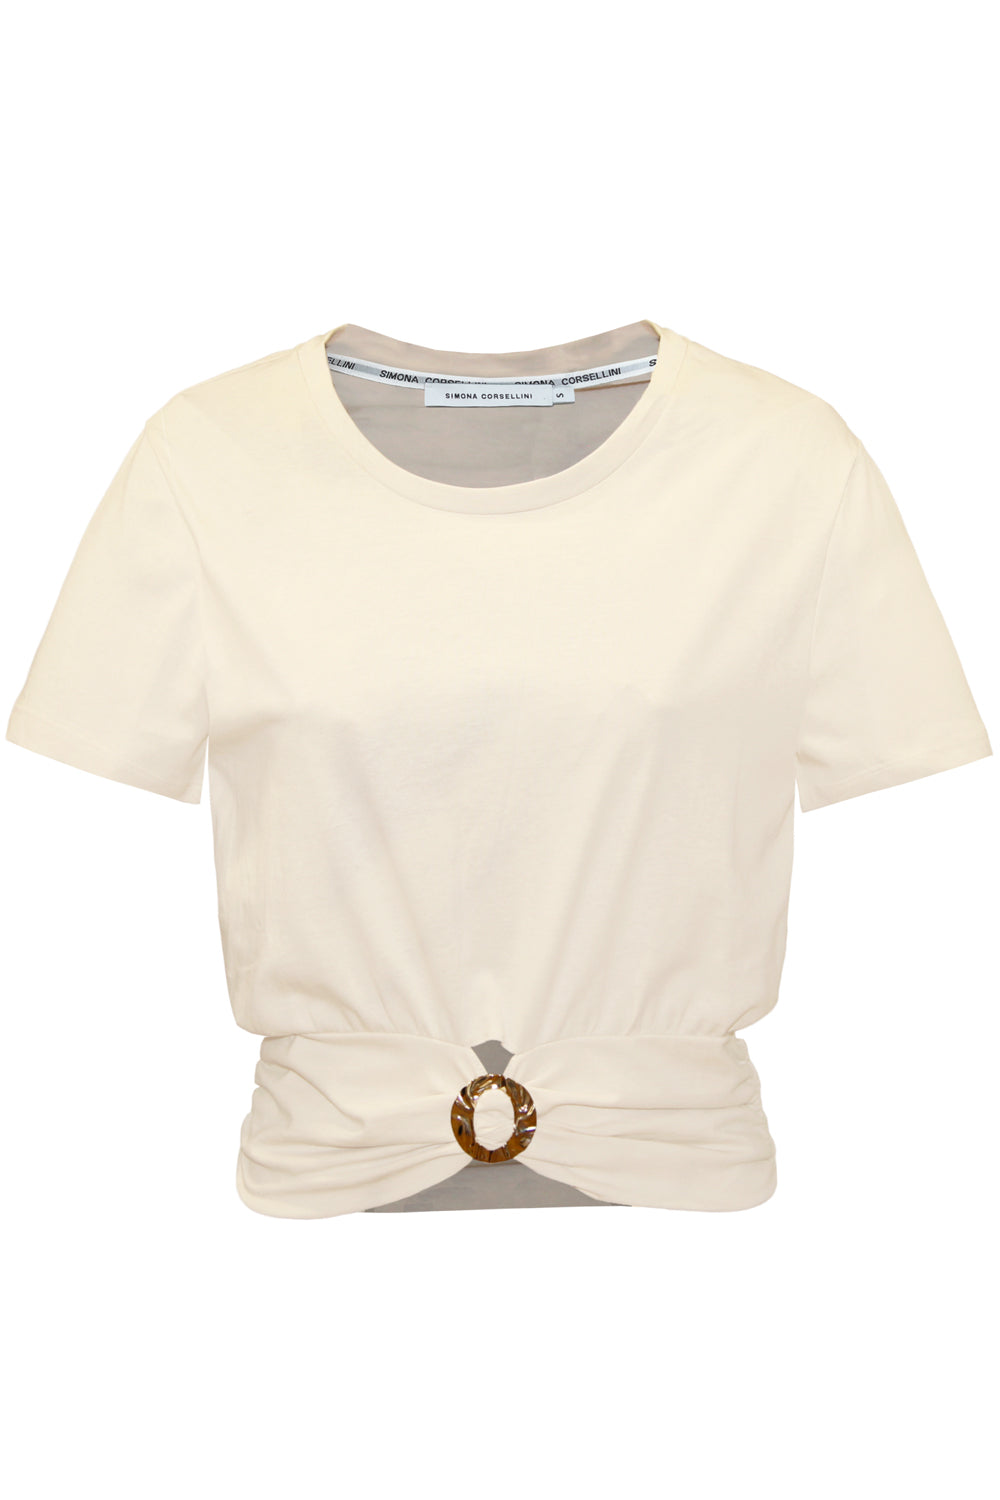 Image of SIMONA CORSELLINI T-shirt con accessorio oro